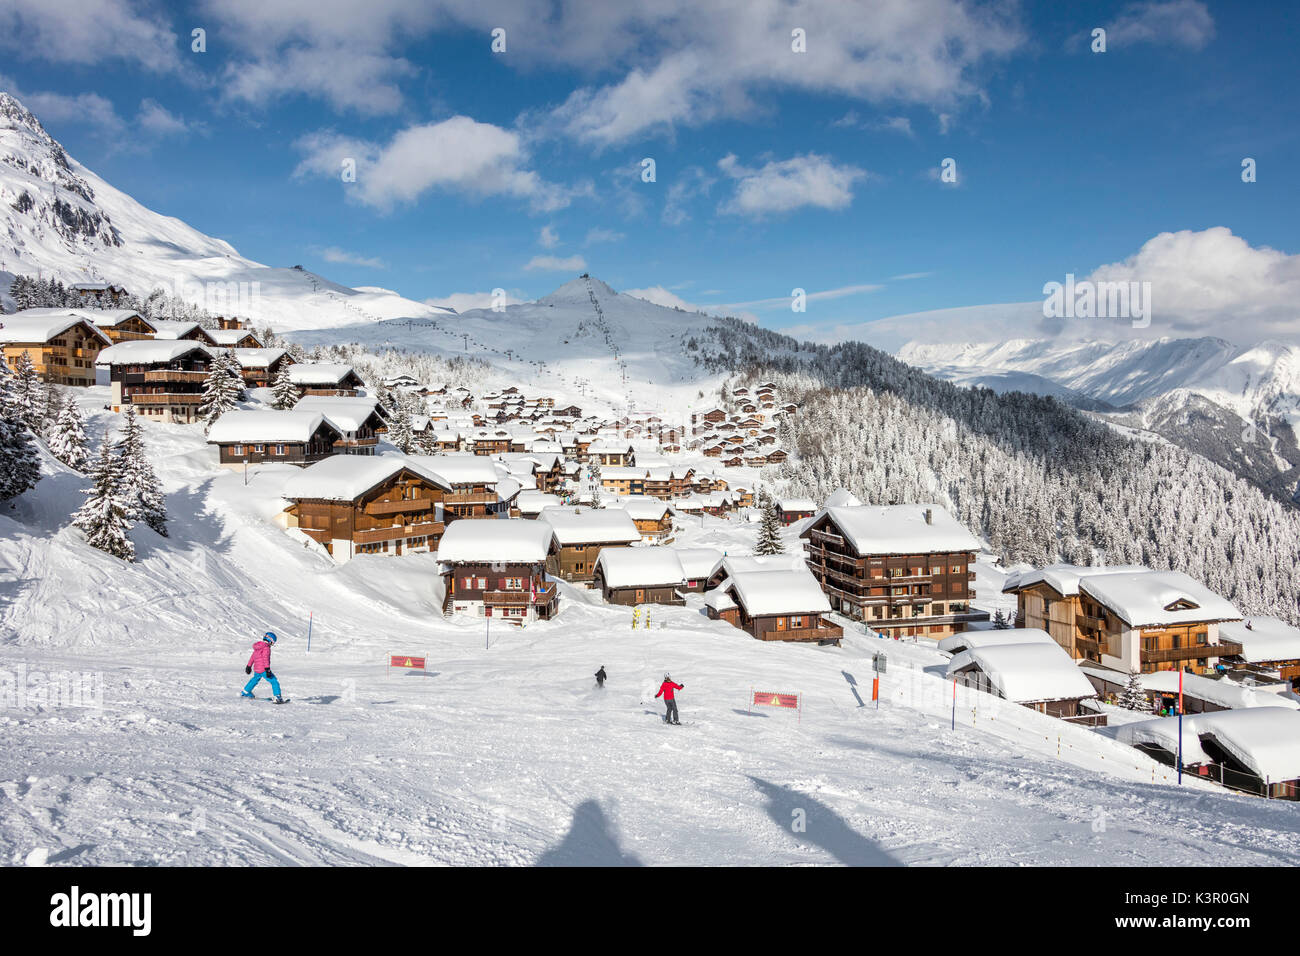 Los esquiadores en las pistas de esquí, el bastidor del típico pueblo alpino Raron Bettmeralp distrito del cantón de Valais Suiza Europa Foto de stock